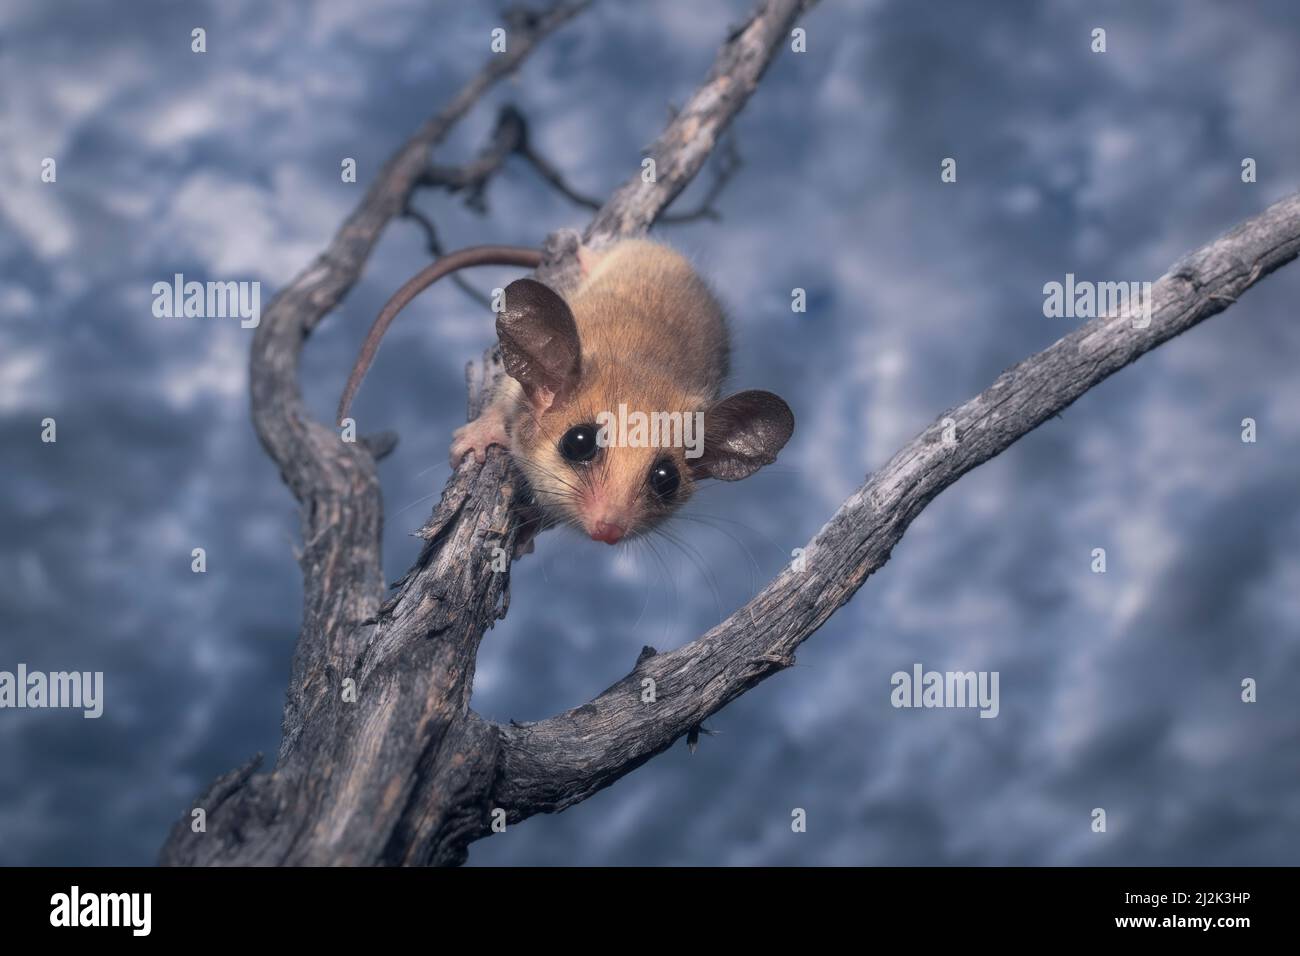 Pygmée sauvage de l'Ouest (Cercartettus concinnus) sur une branche, Australie Banque D'Images